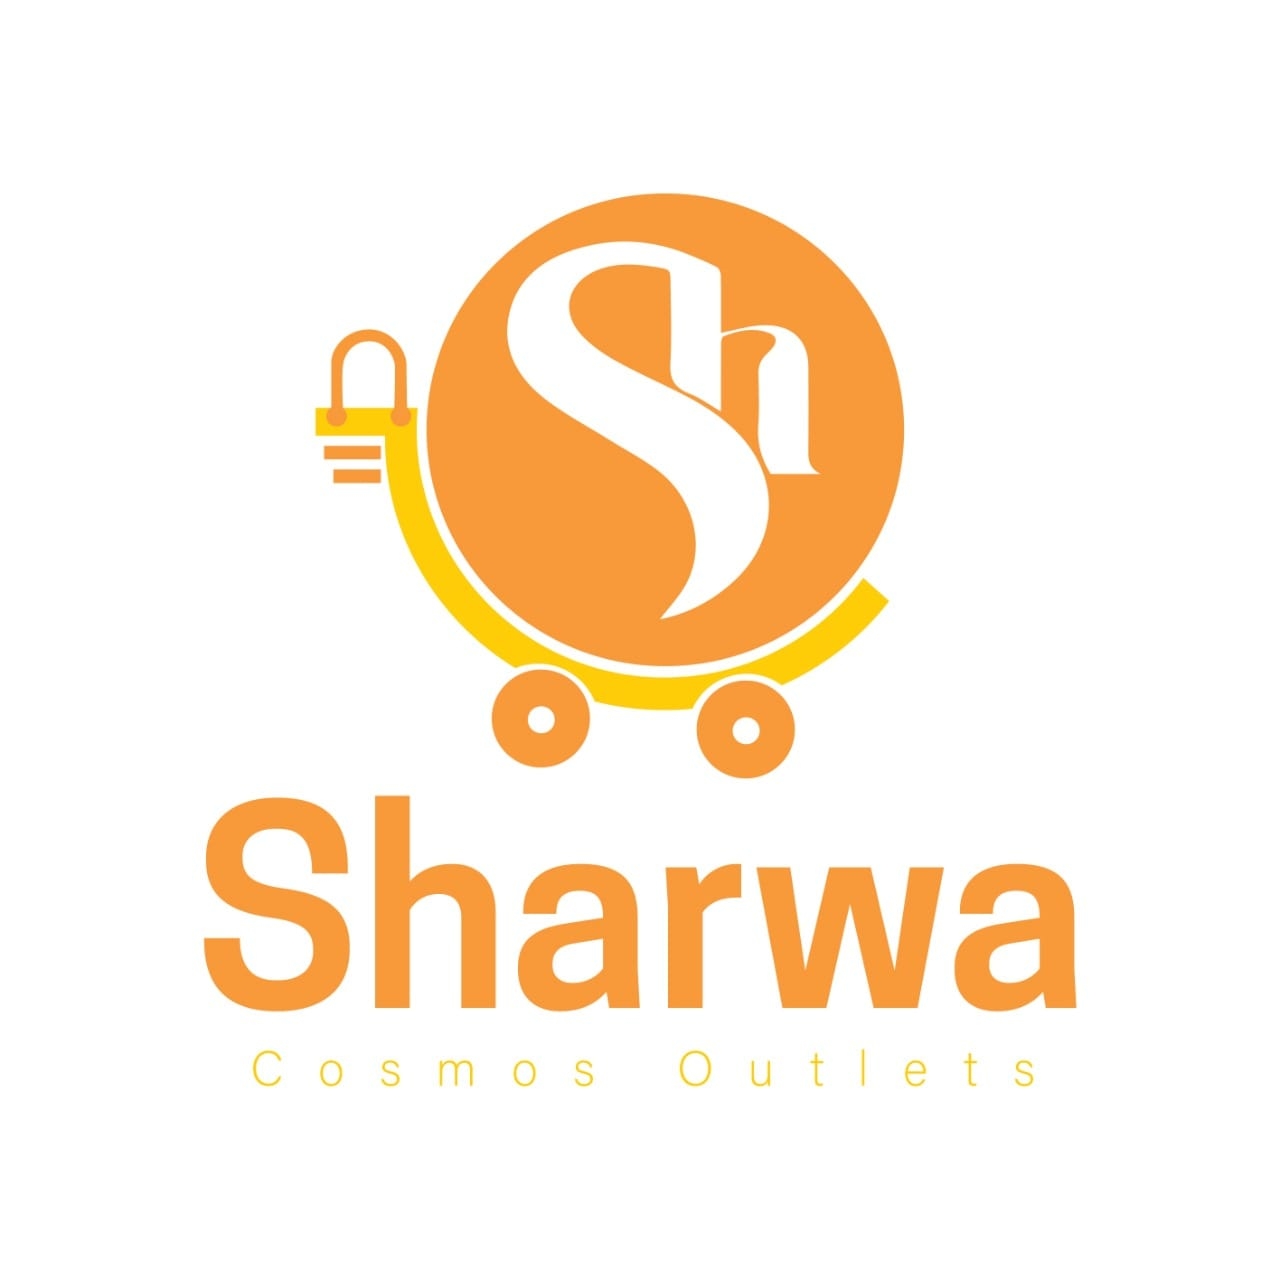 Sharwa company